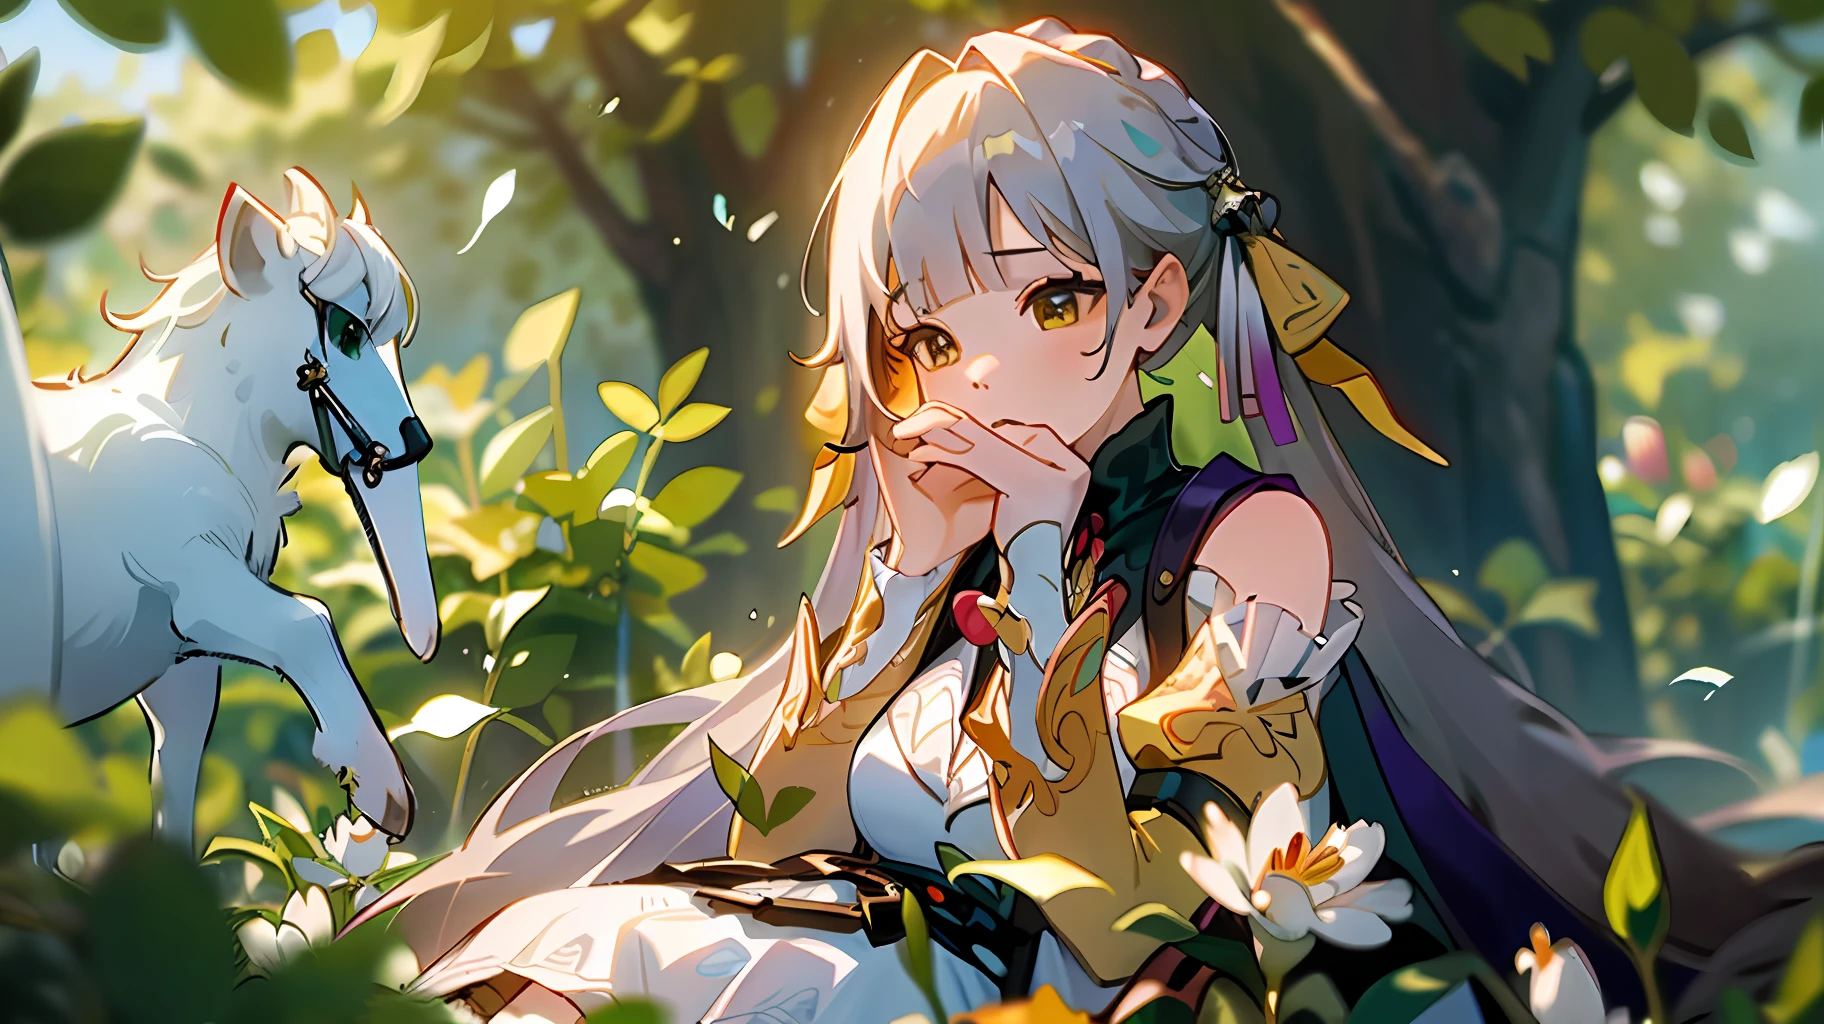 (шедевр, Лучшее качество),1 девушка с длинными белыми волосами сидит в поле зеленых растений и цветов, ее рука под подбородком, теплое освещение, белое платье, размытый передний план